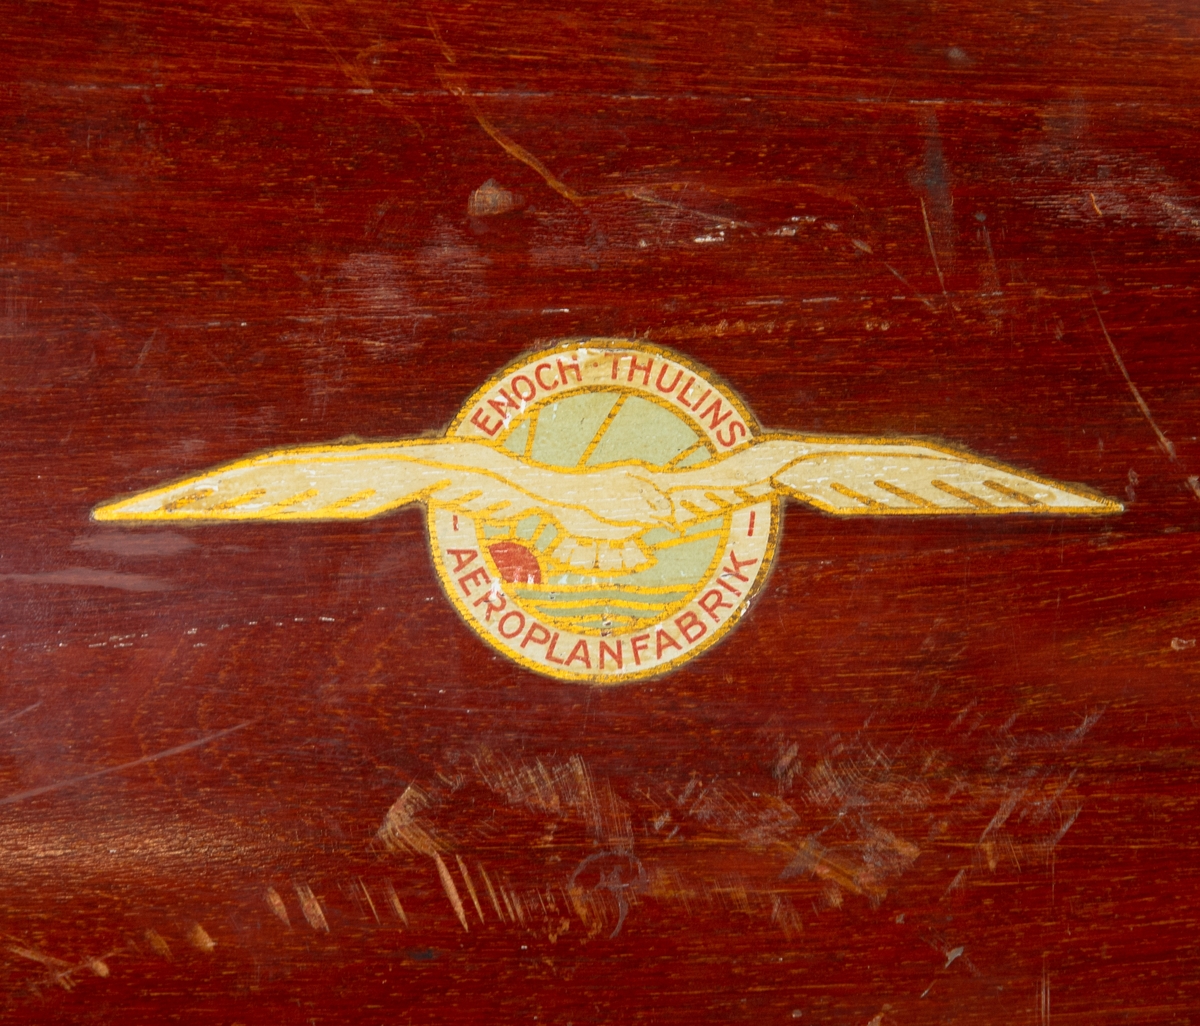 Tvåbladig träpropeller med nav i metall. Propellern är mässingsskodd.
På båda bladen sitter ett märke med texten "Enoch Thulins Aeroplanfabrik" samt företagets logga.